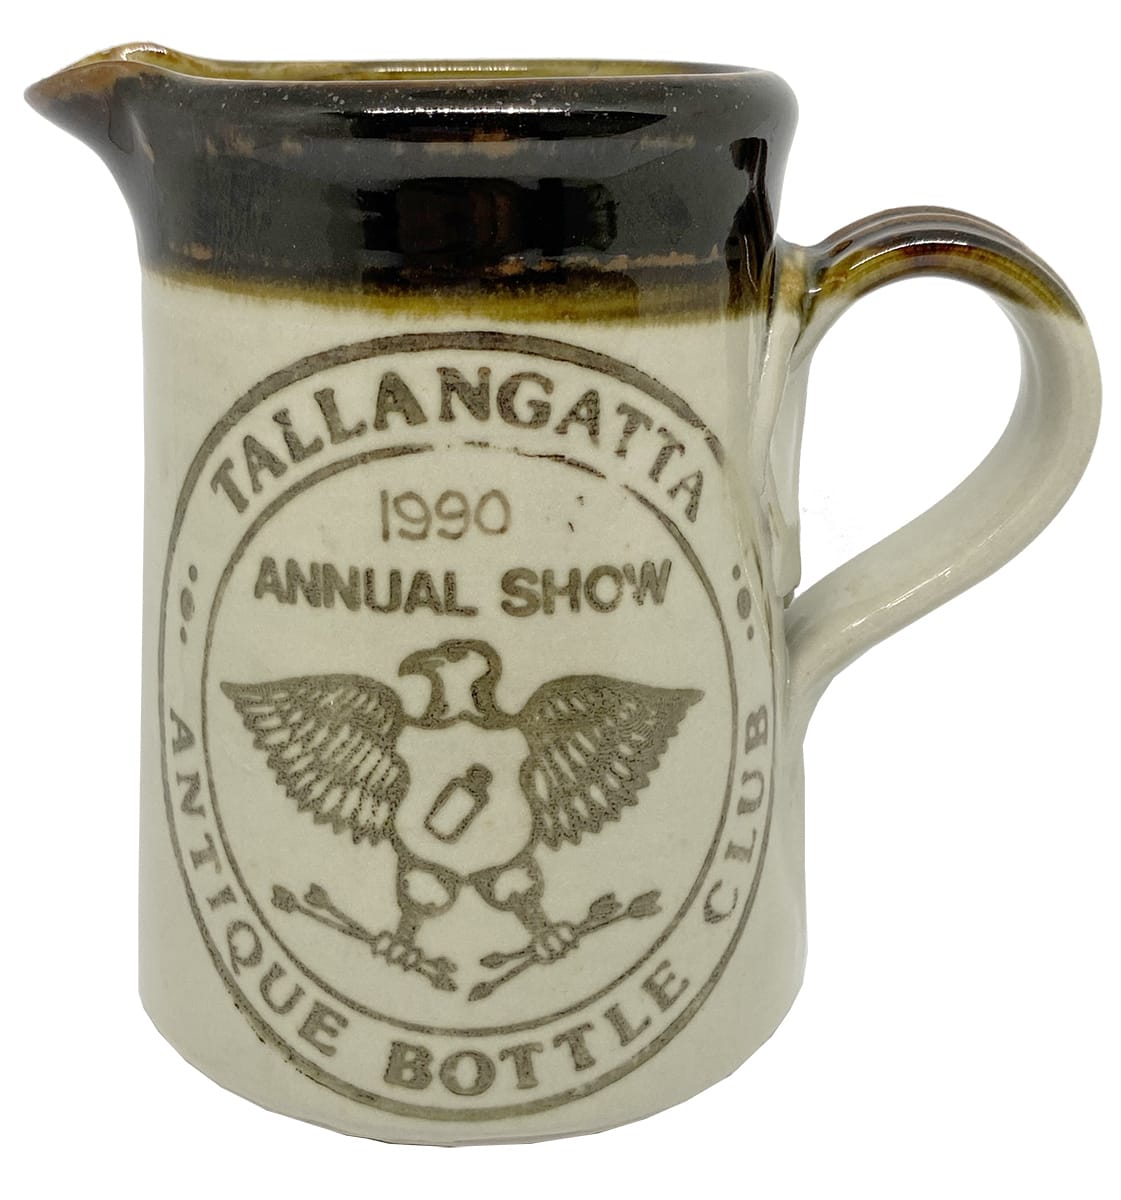 1990 Tallangatta Annual Bottle Show Brookfield Pottery Jug